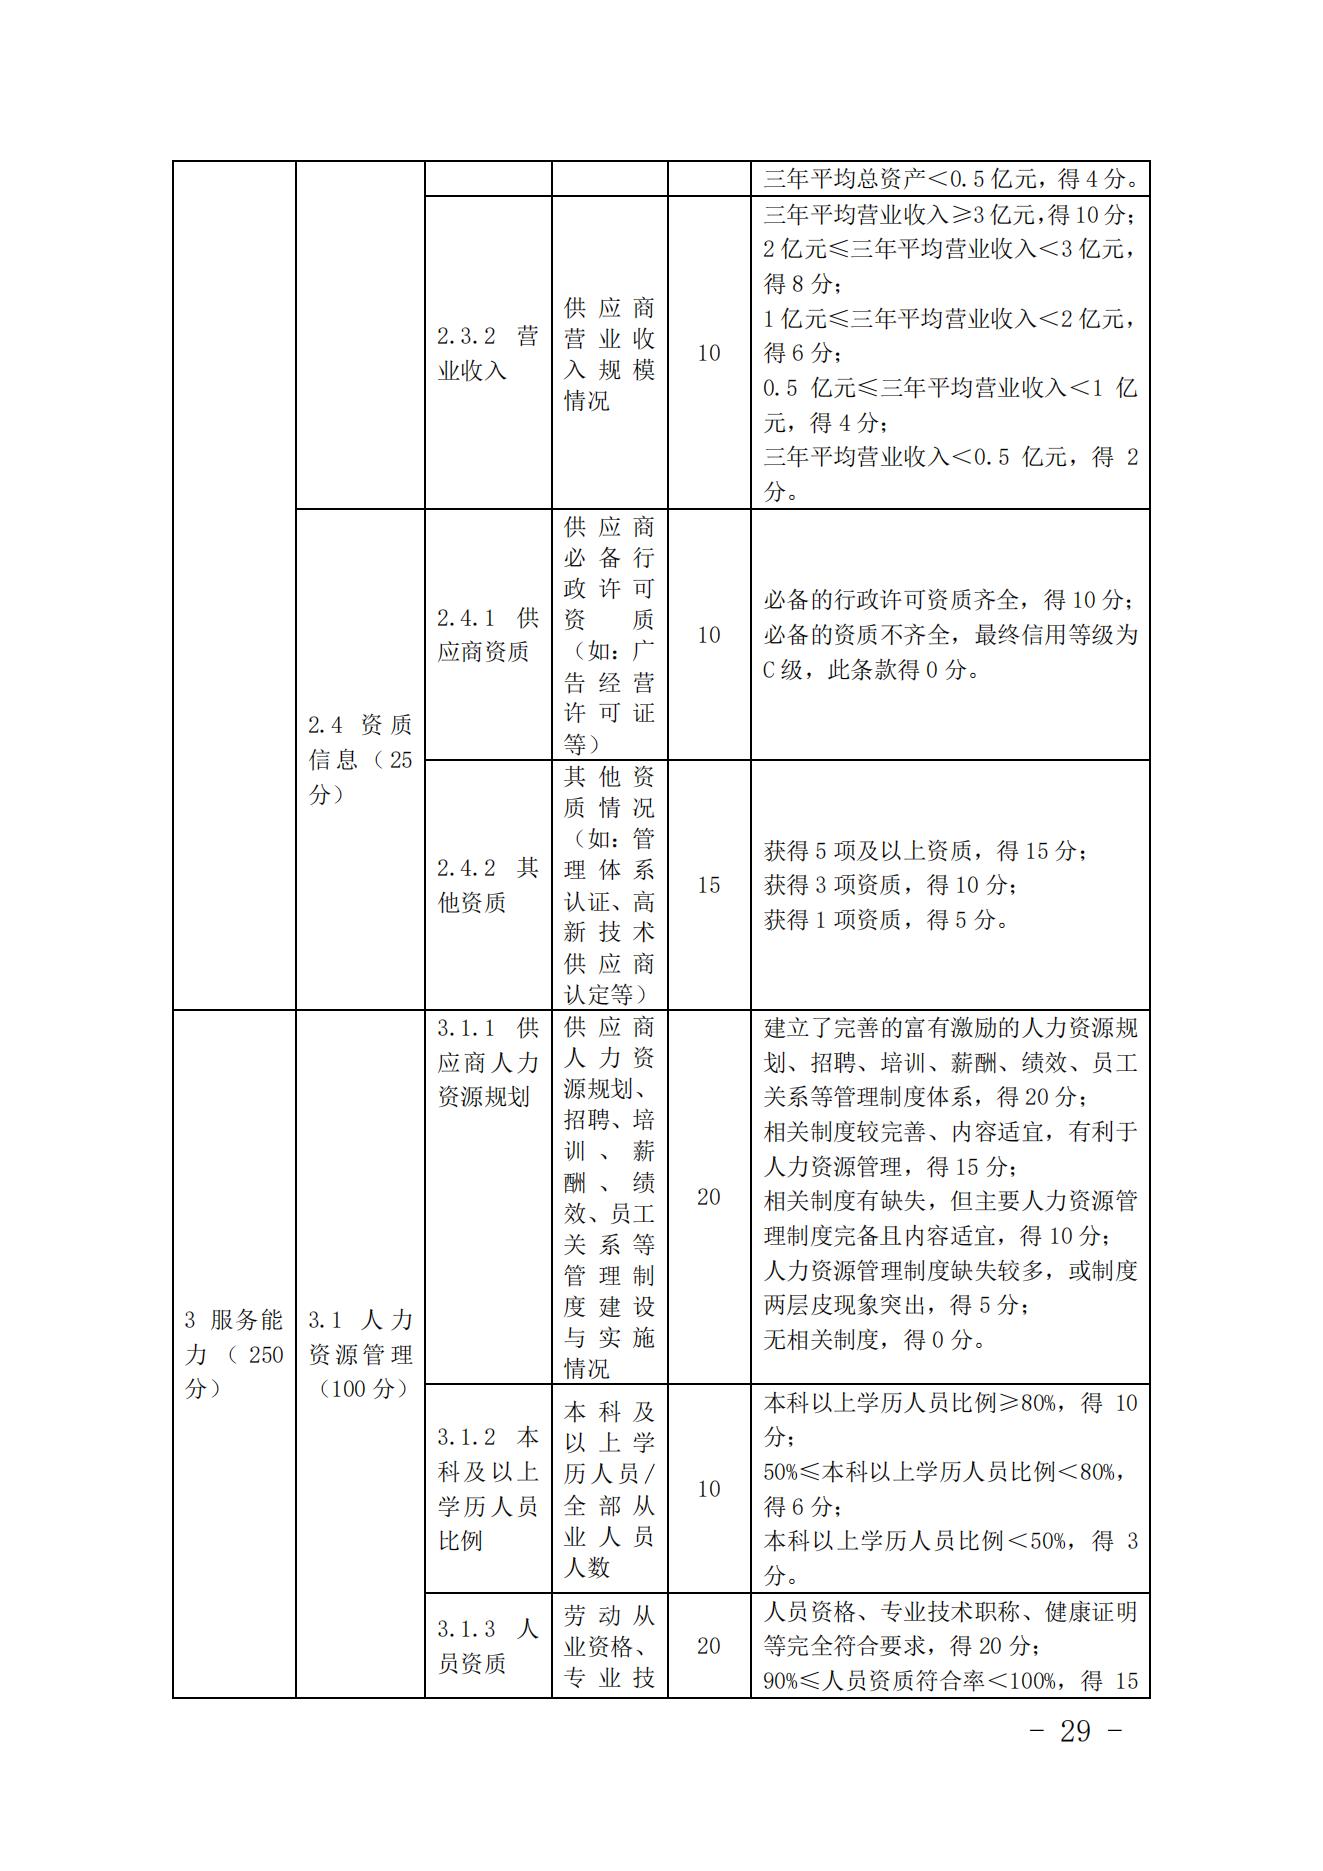 关于印发《中国核能行业协会核能行业供应商信用评价管理办法》《中国核能行业协会核能行业供应商信用评价规范》的通知_28.jpg